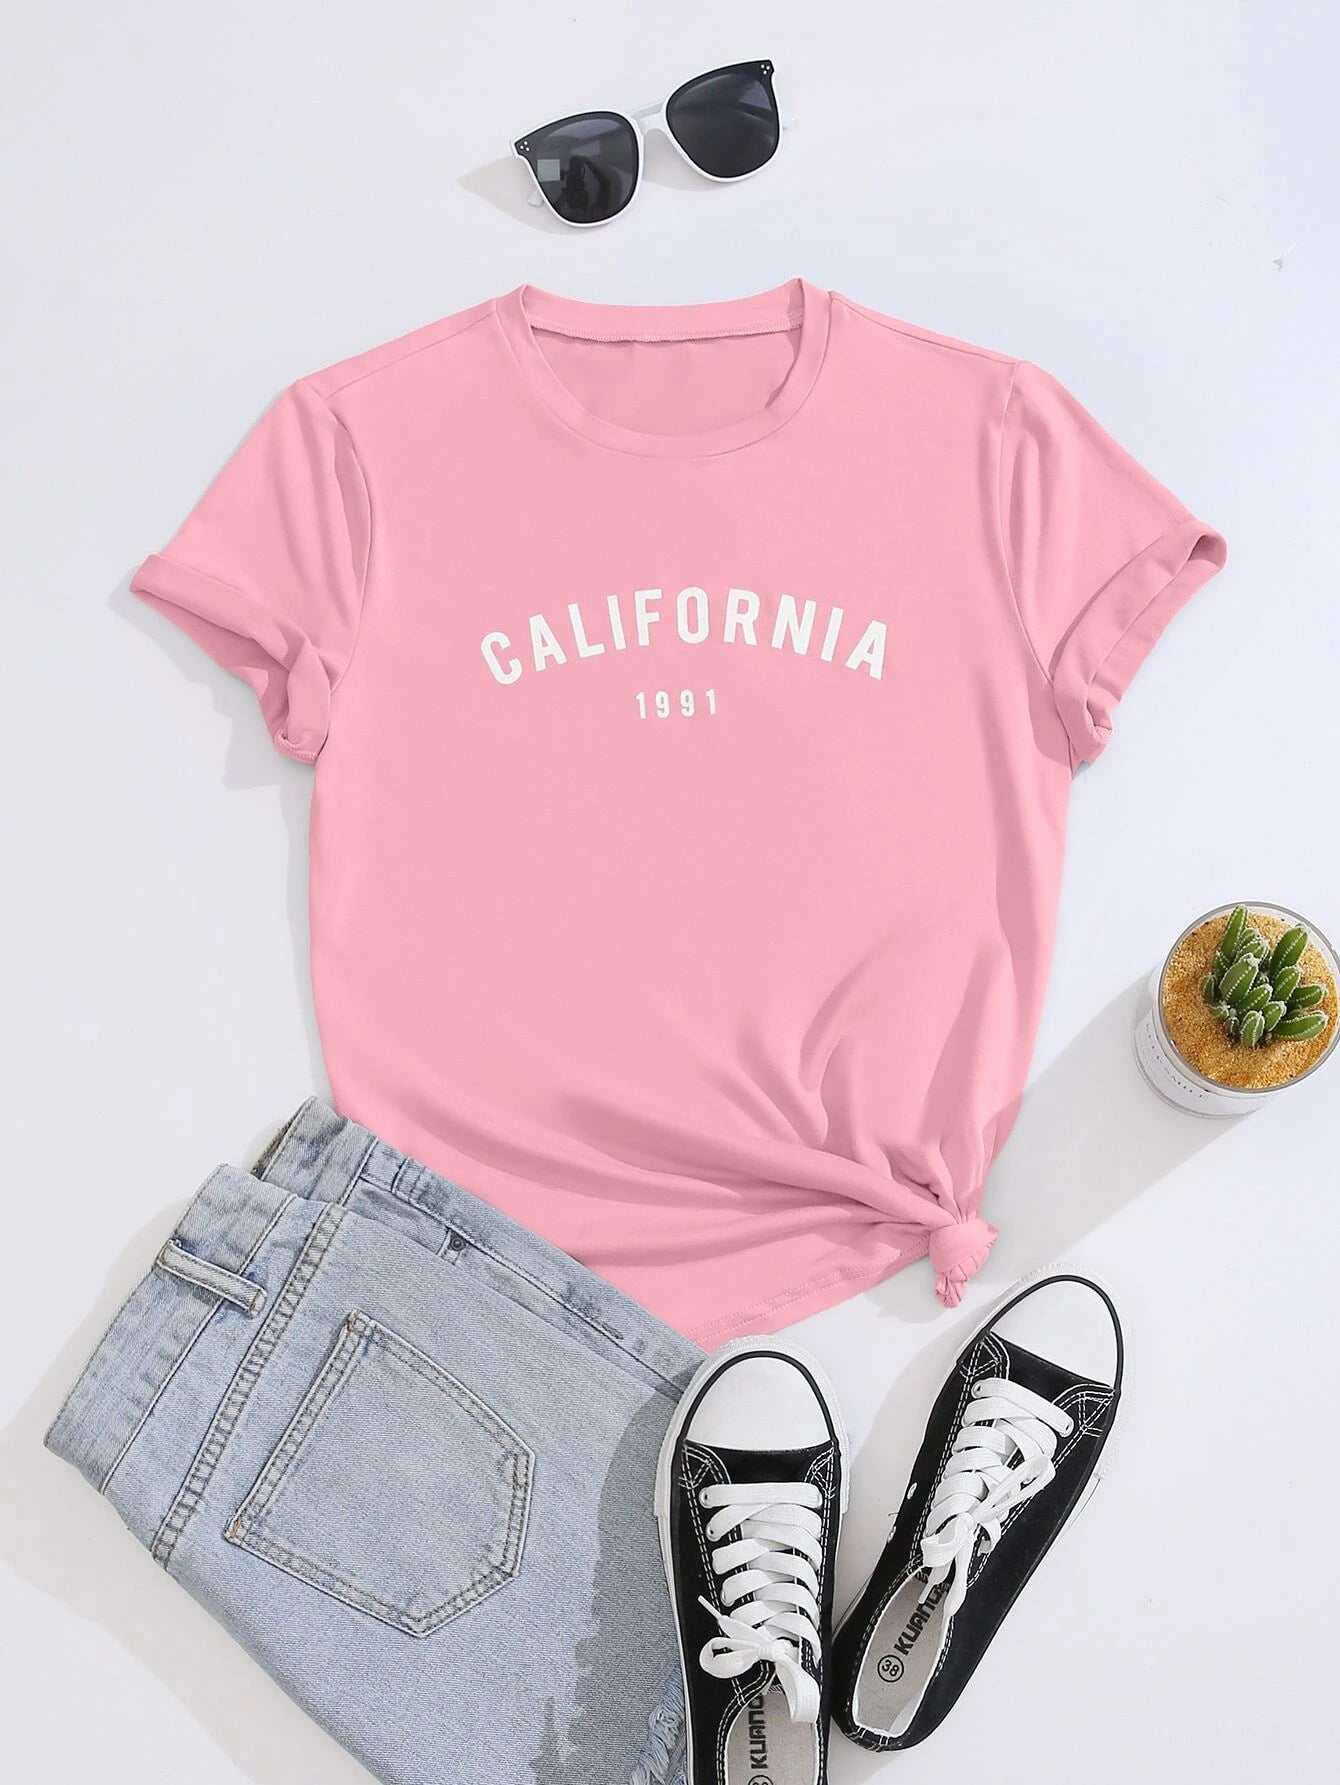 Camiseta Feminina California 1991 Tumblr Aesthetic